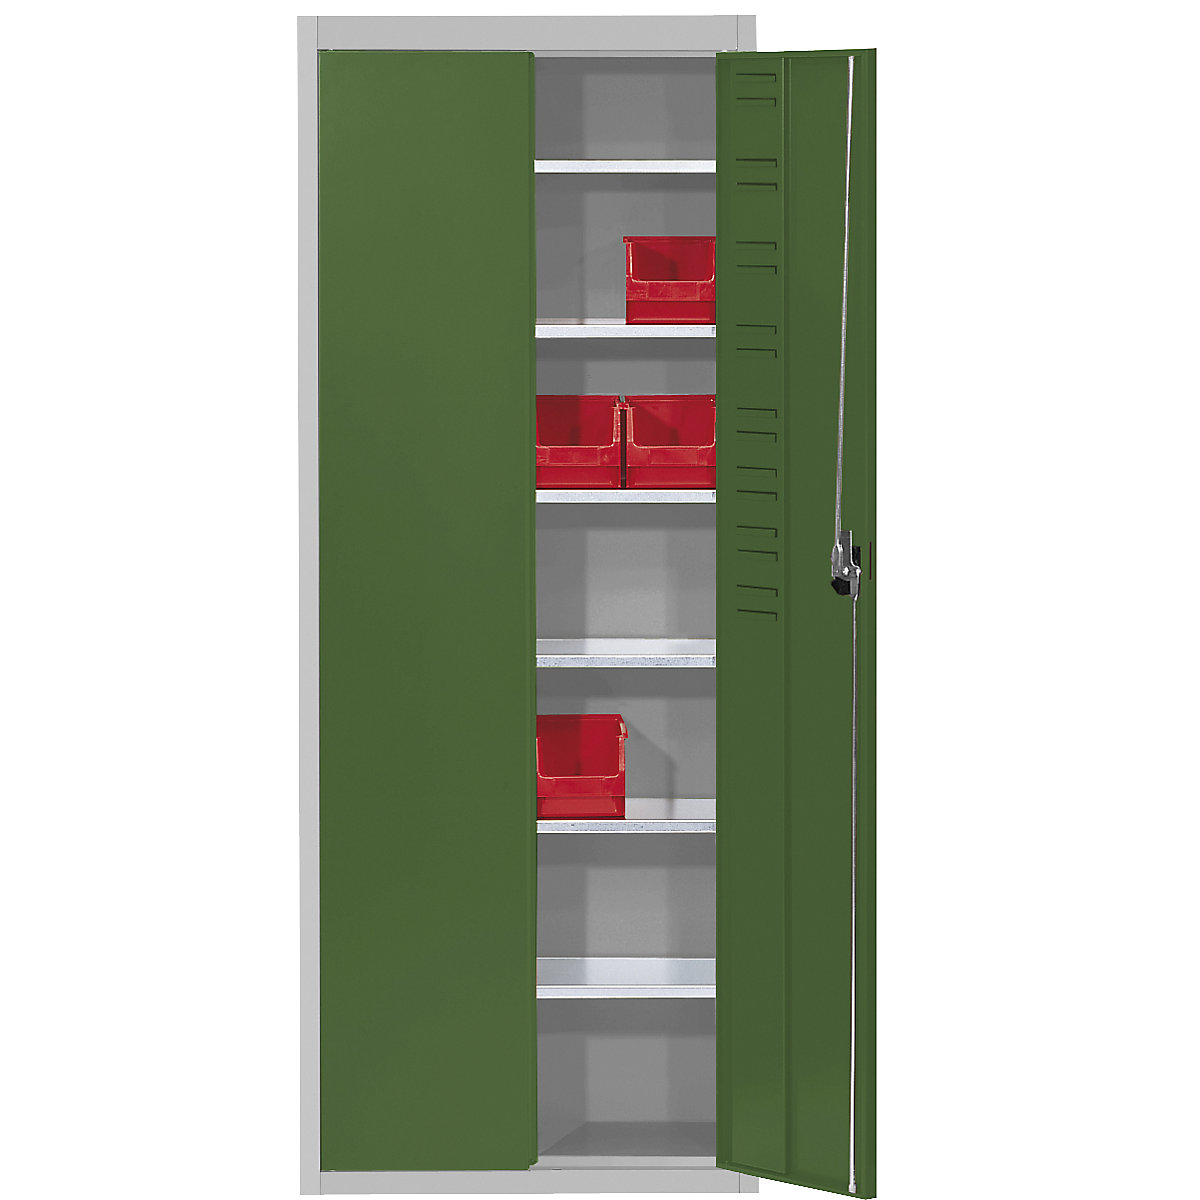 Magazijnkast, zonder magazijnbakken – mauser, h x b x d = 1740 x 680 x 280 mm, tweekleurig, kastframe grijs, deuren groen-6